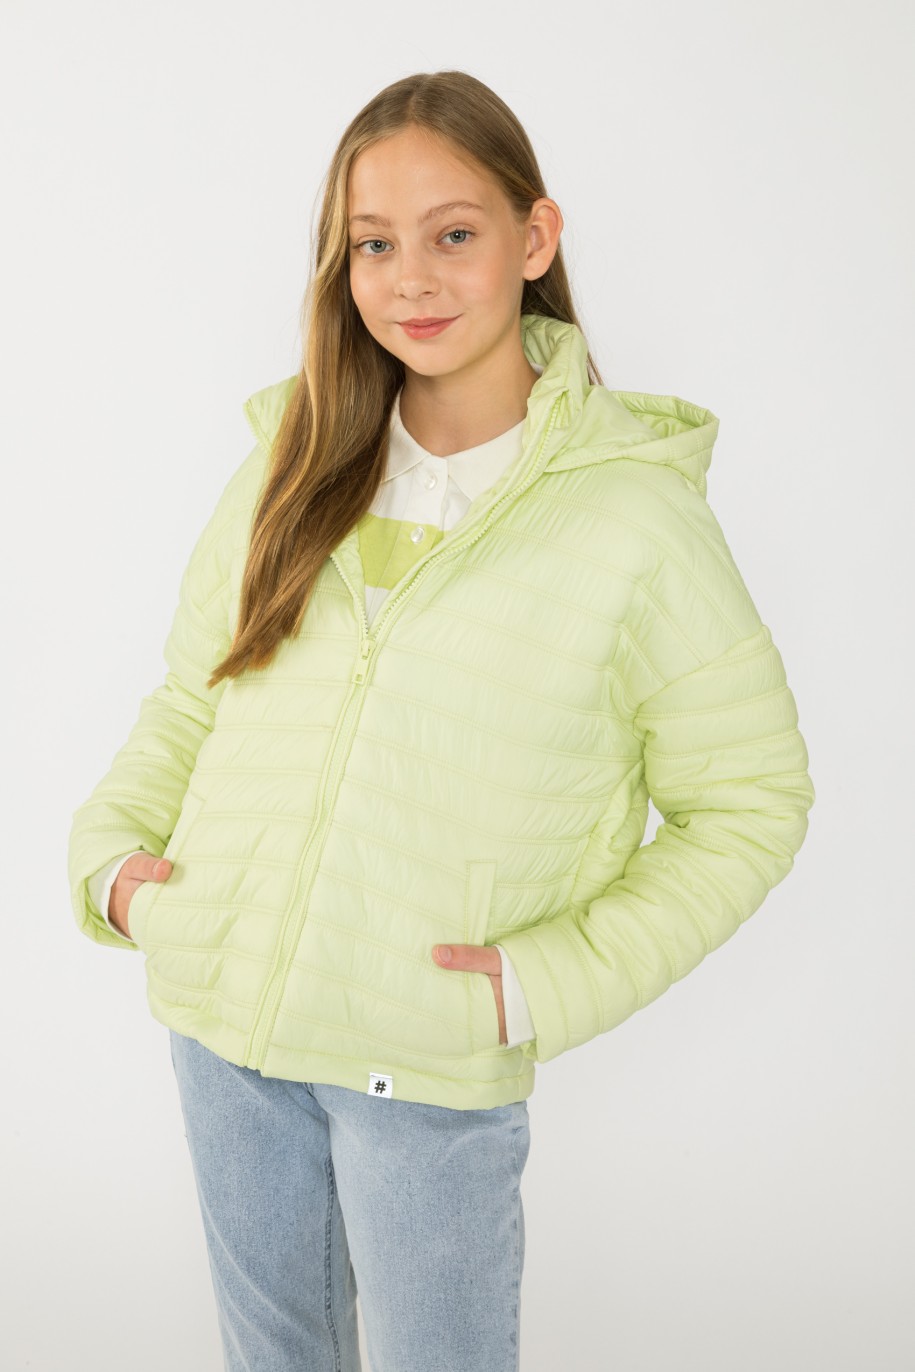 Limonkowa kurtka przejściowa z kapturem dla dziewczyny - 41750